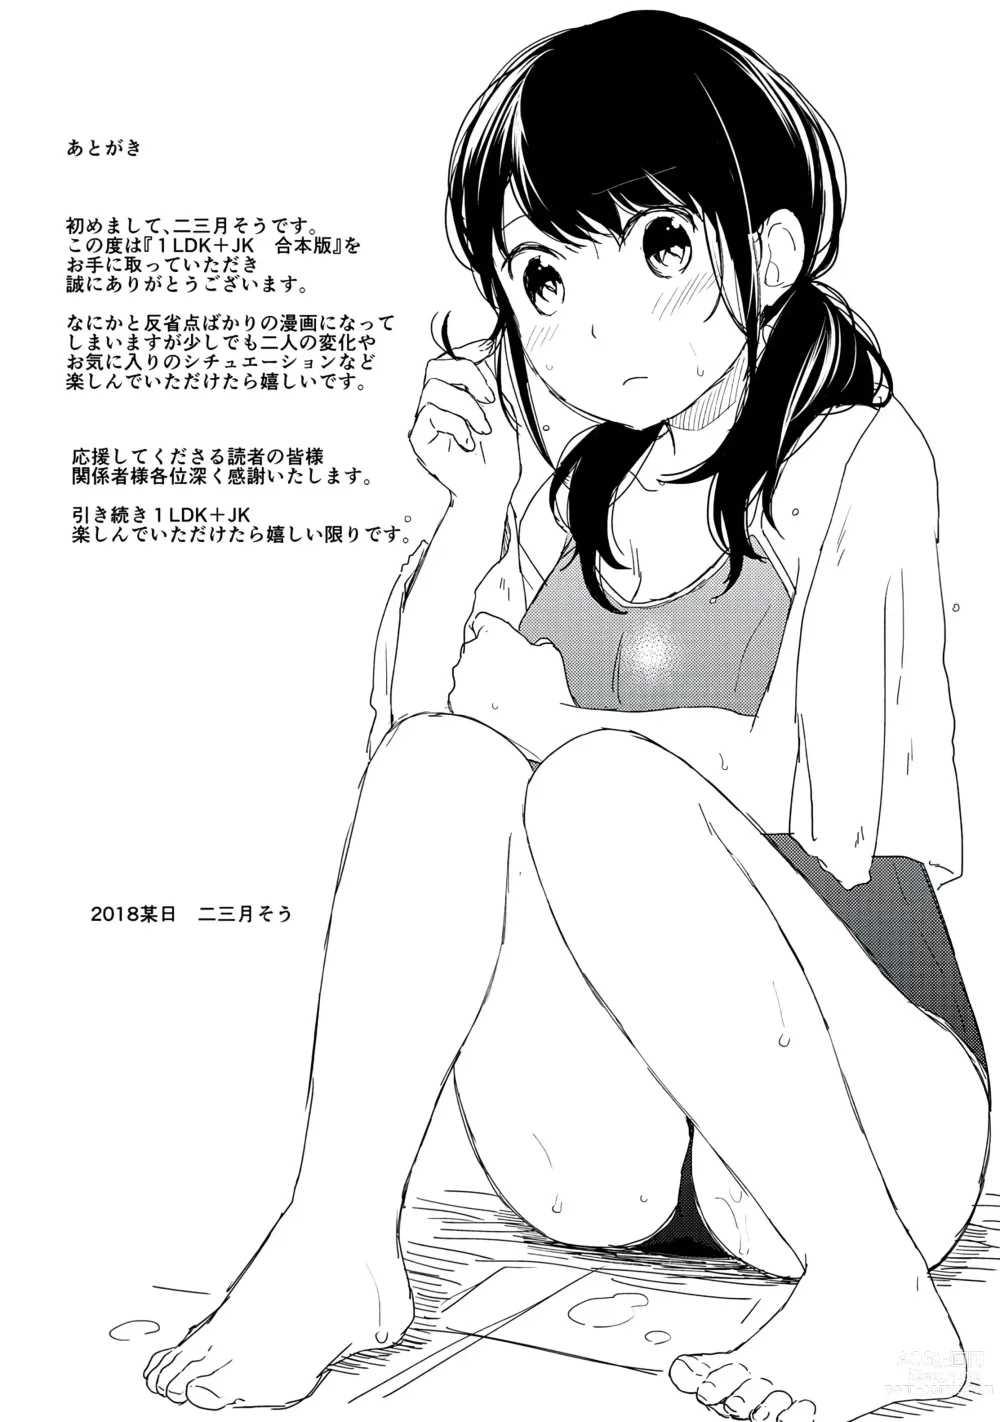 Page 193 of manga 1LDK+JK Ikinari Doukyo? Micchaku!? Hatsu Ecchi!!? Vol. 1